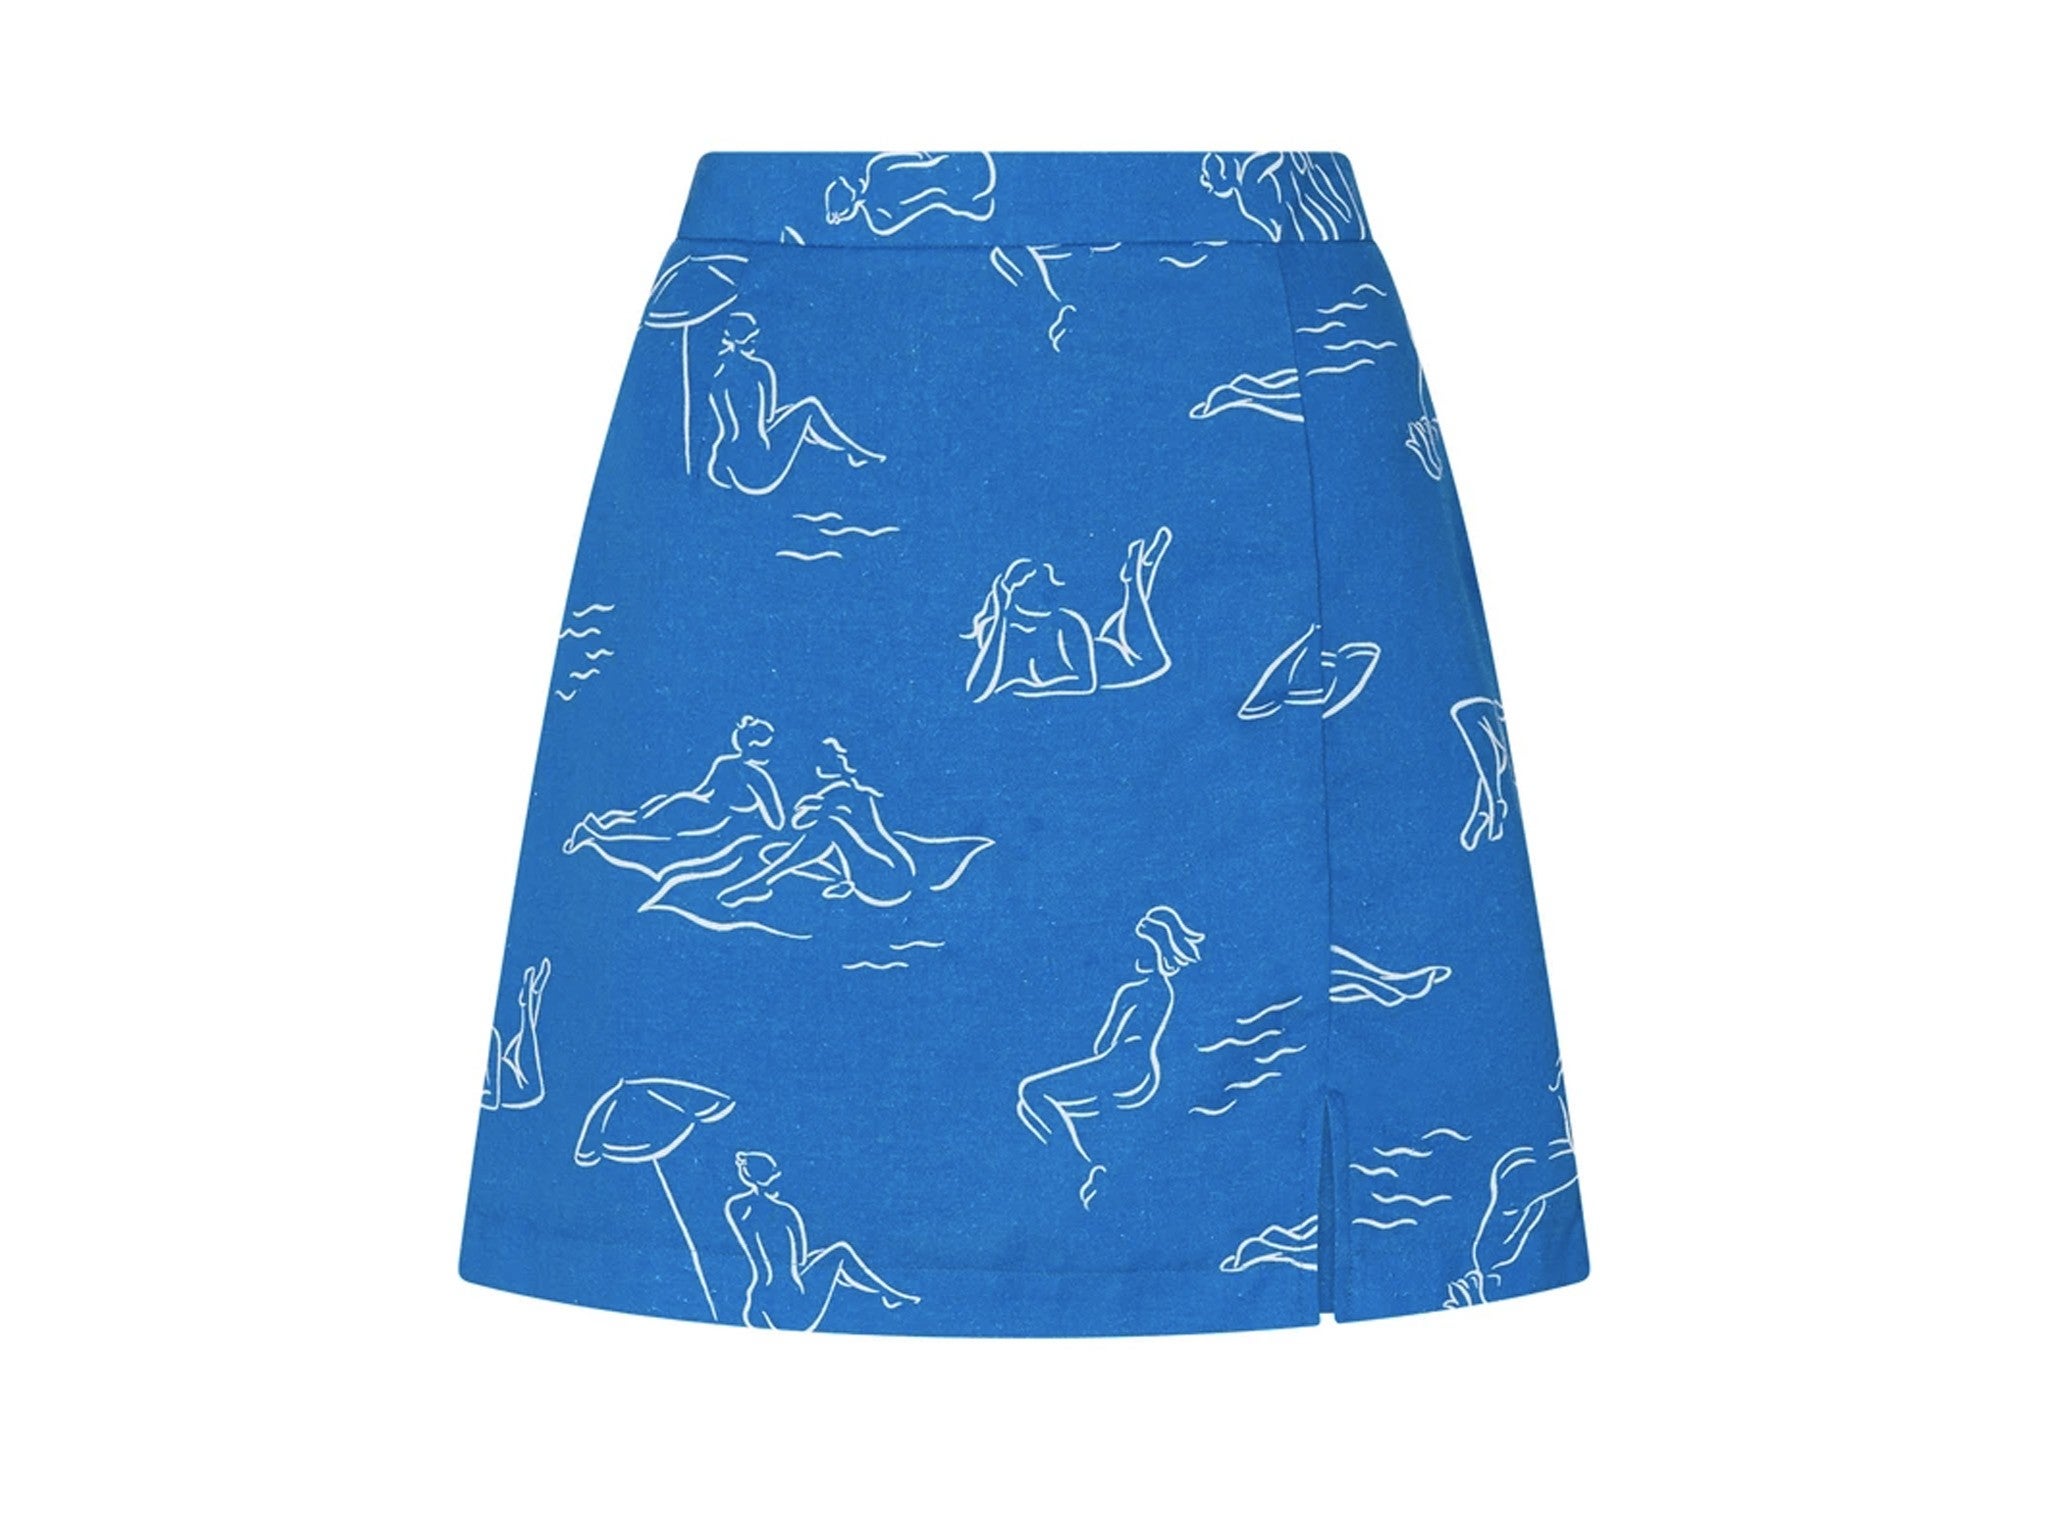 Kitri Studio Josie blue sunbathers mini skirt indybest.jpeg